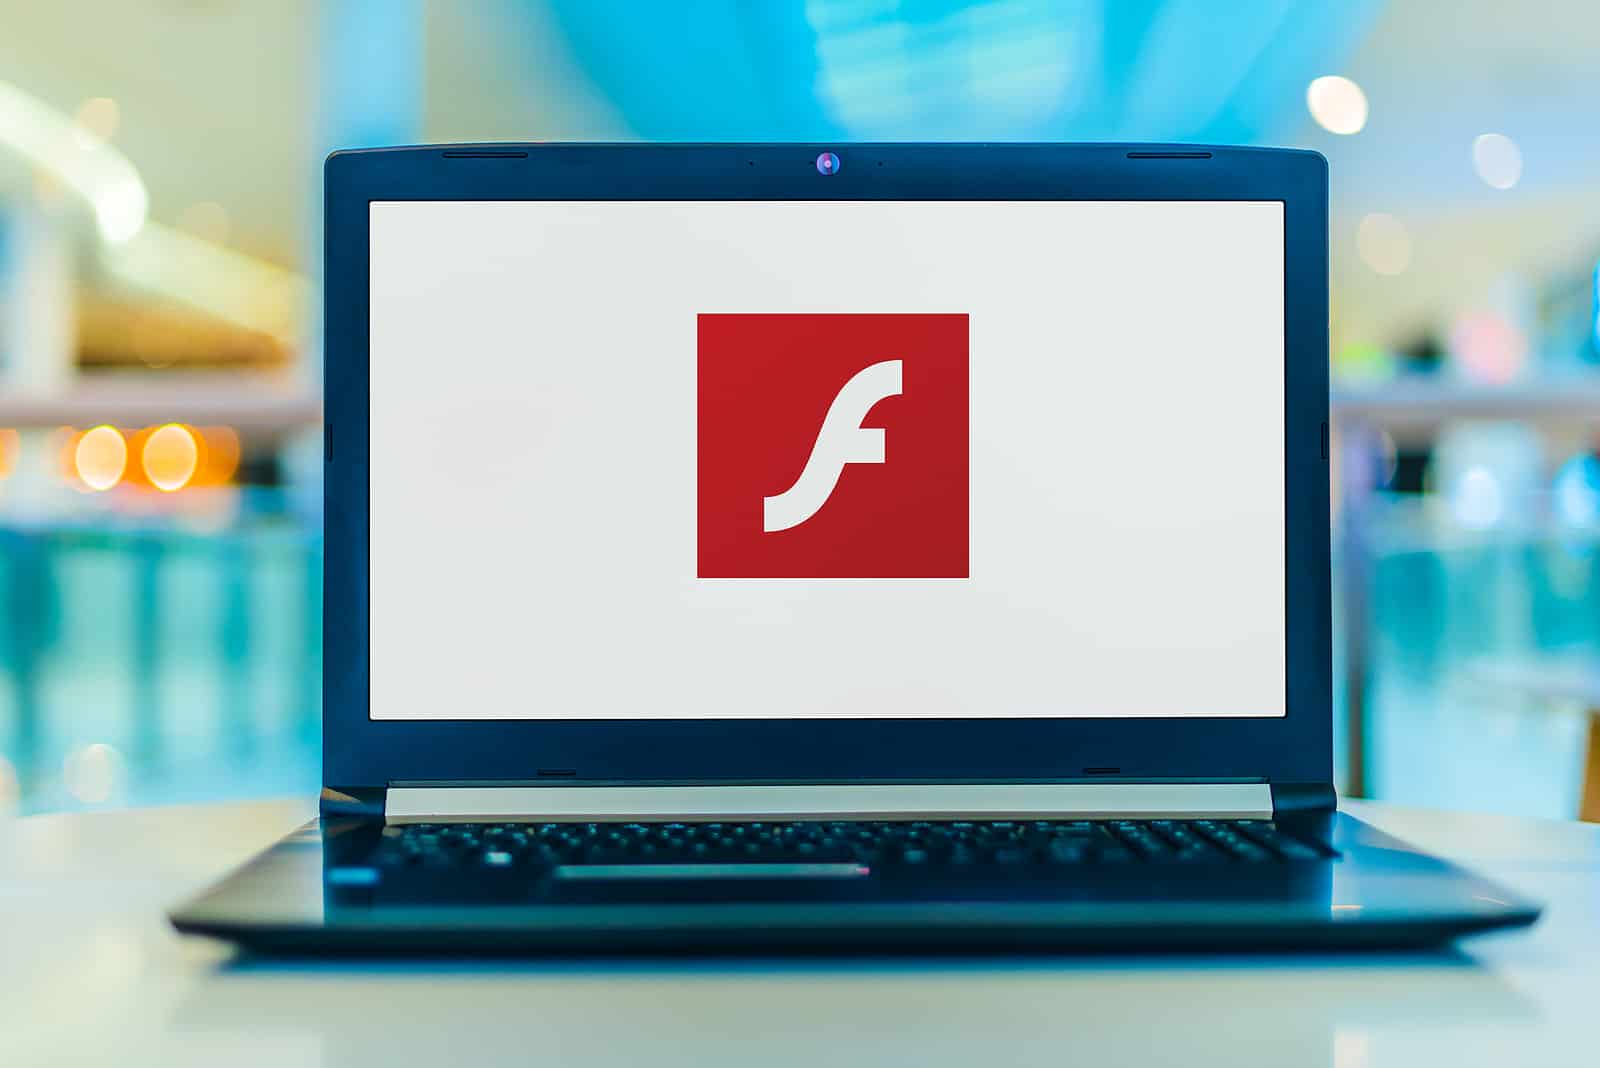 Laptop computer displaying logo of Adobe Flash